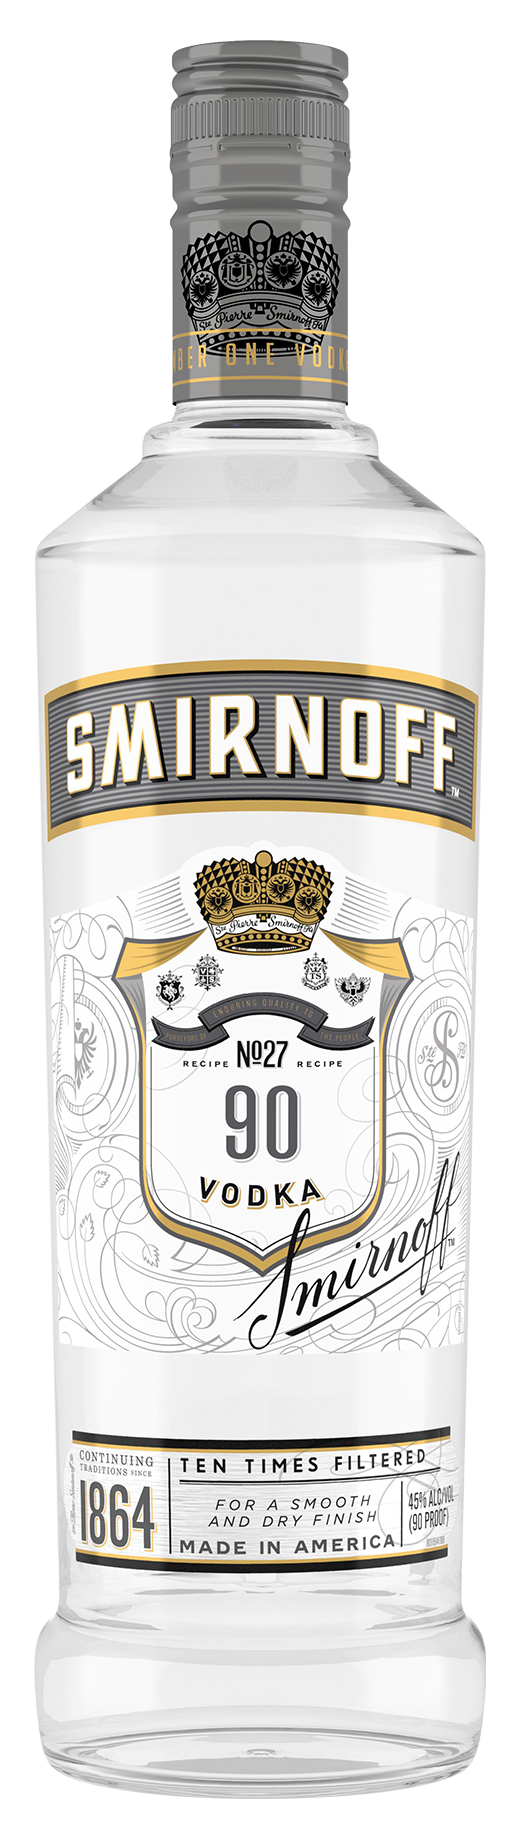 SMIRNOFF 90.4 Vodka BeverageWarehouse